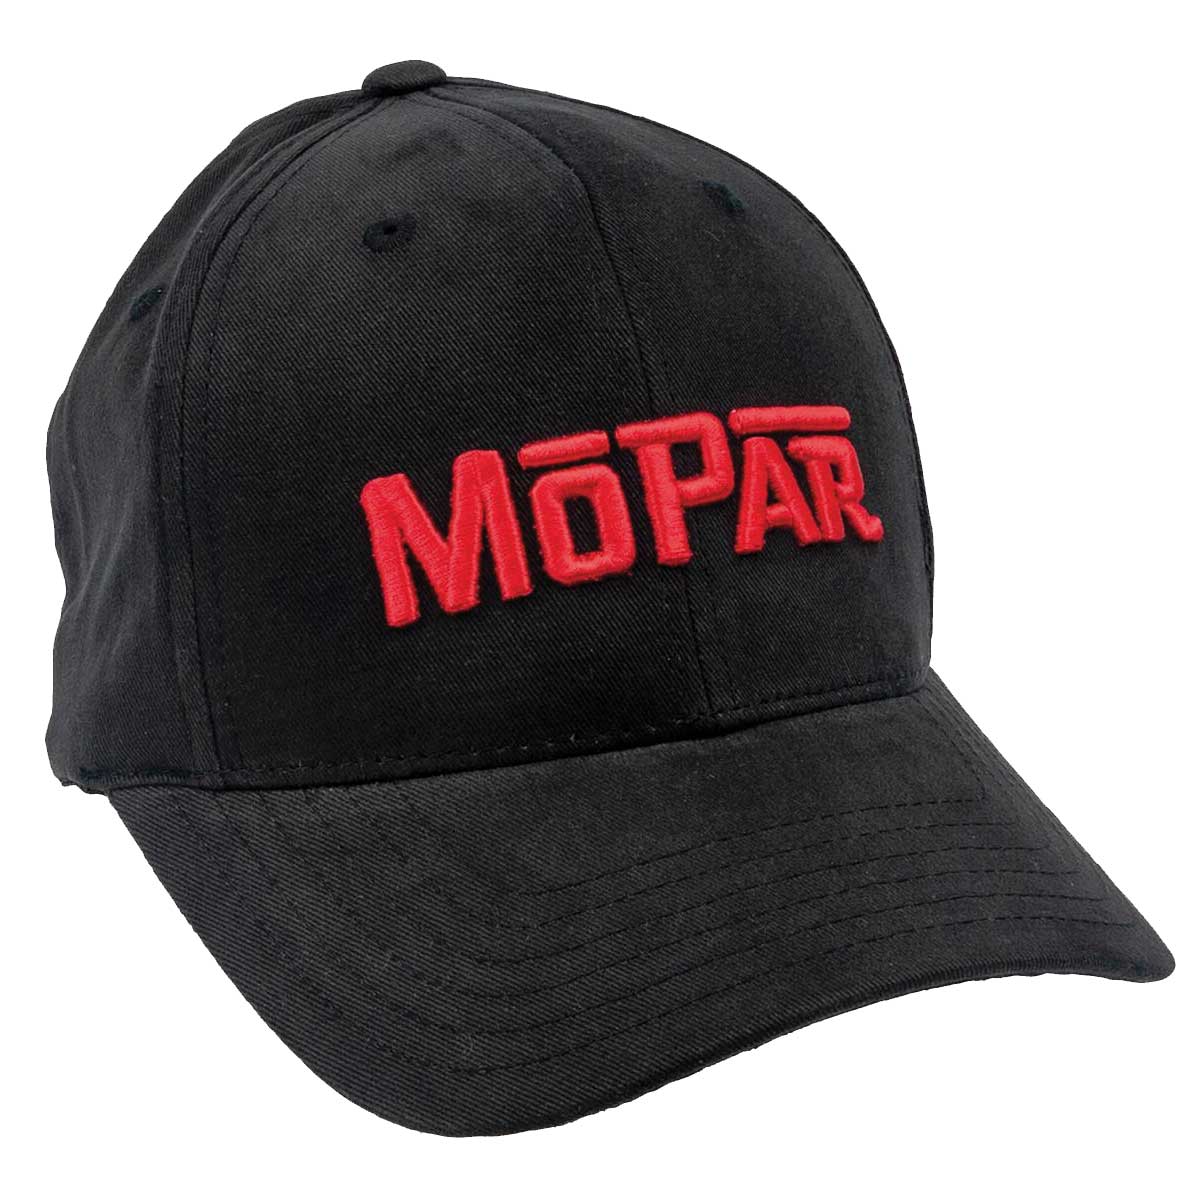 www.uspartsgermany.de - BASEBALL CAP MOPAR